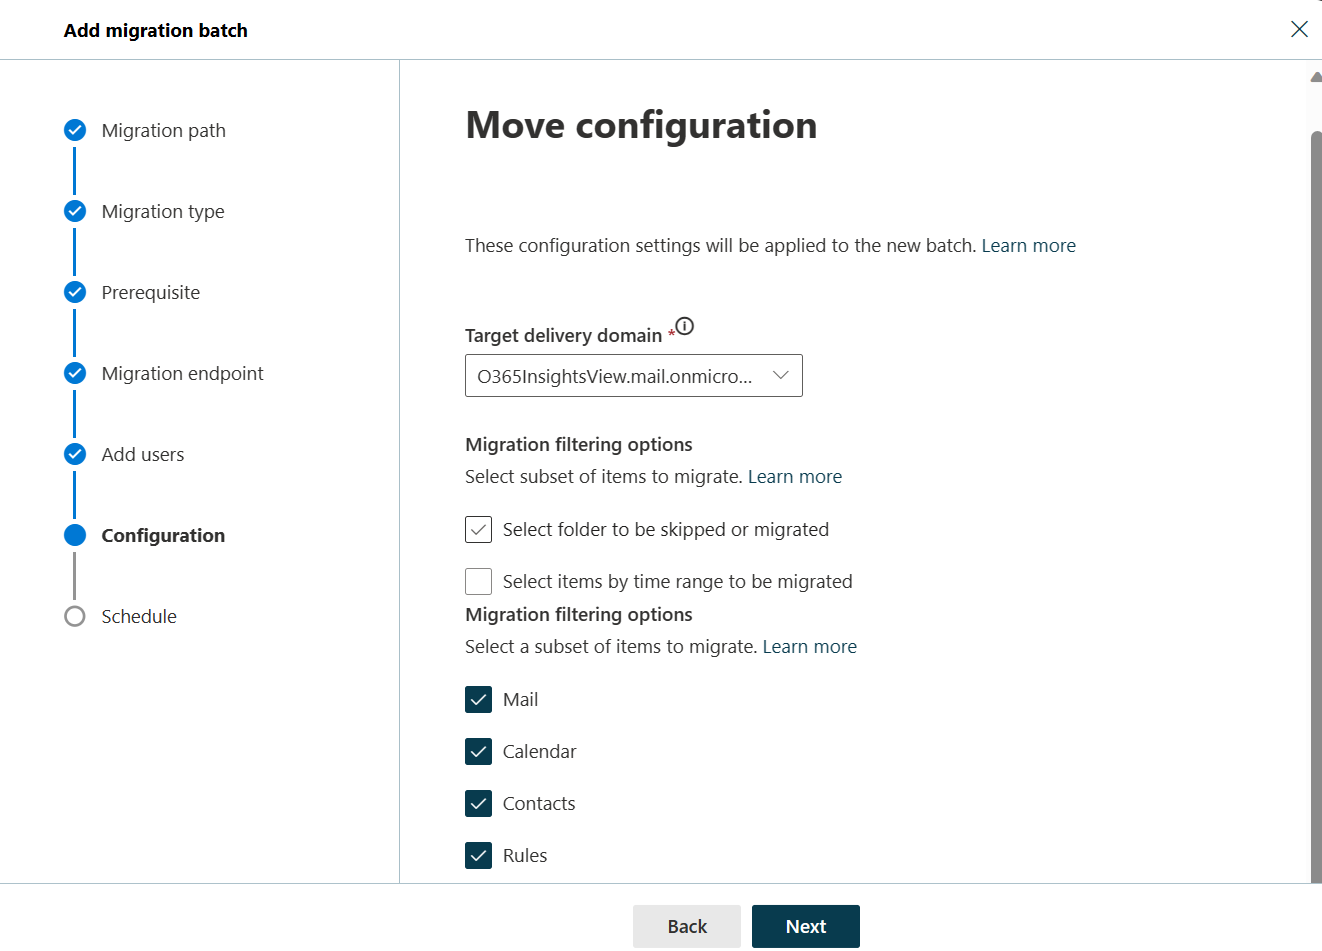 Снимок экрана: шестой шаг мастера добавления пакетной службы миграции с целевым доменом доставки и выбранными папками почты, календаря, контактов и правил.